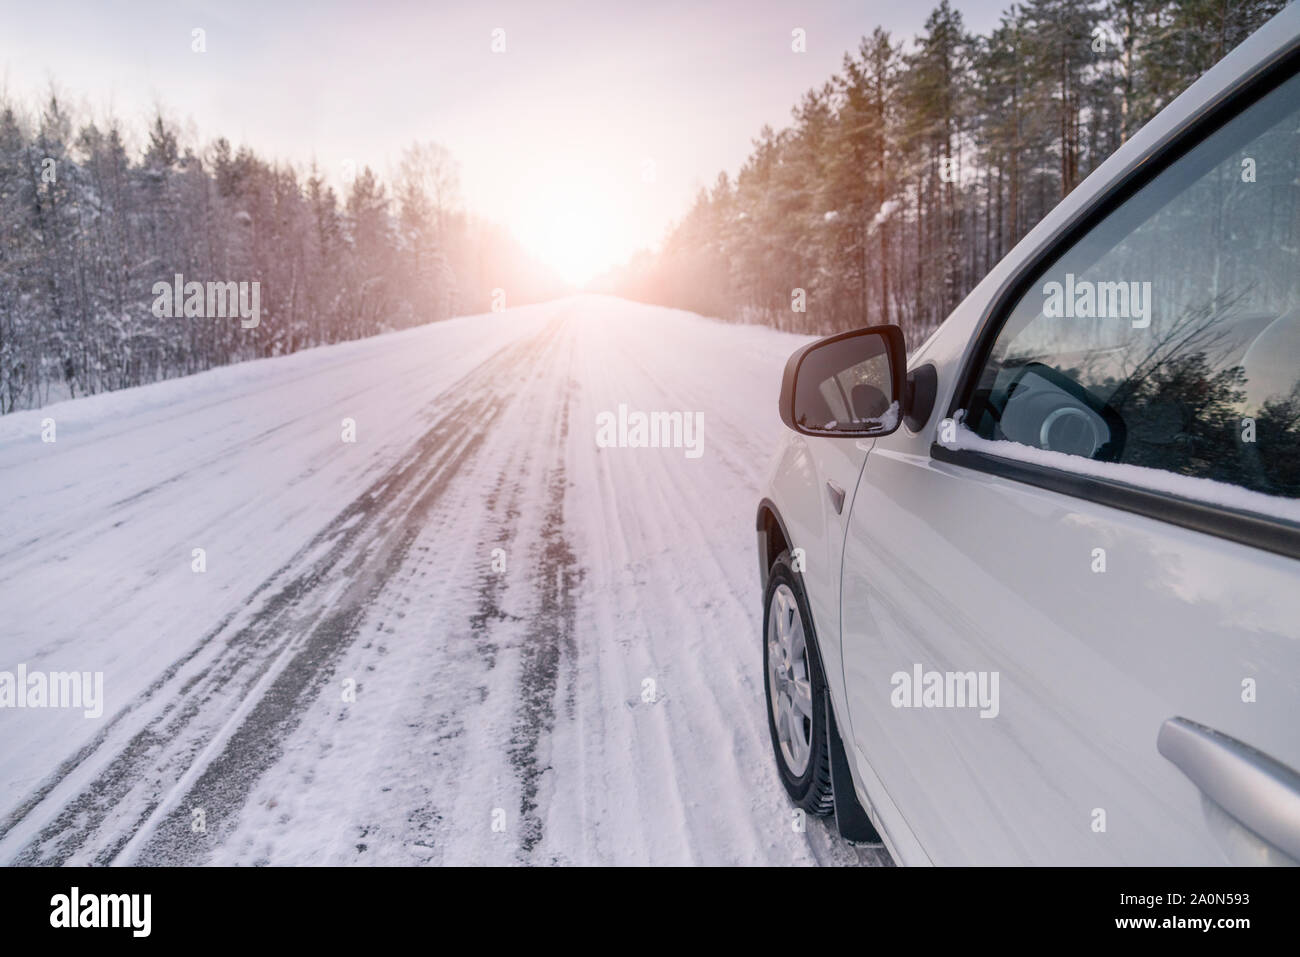 El camino de invierno se refleja en el coche de retrovisor Foto de stock